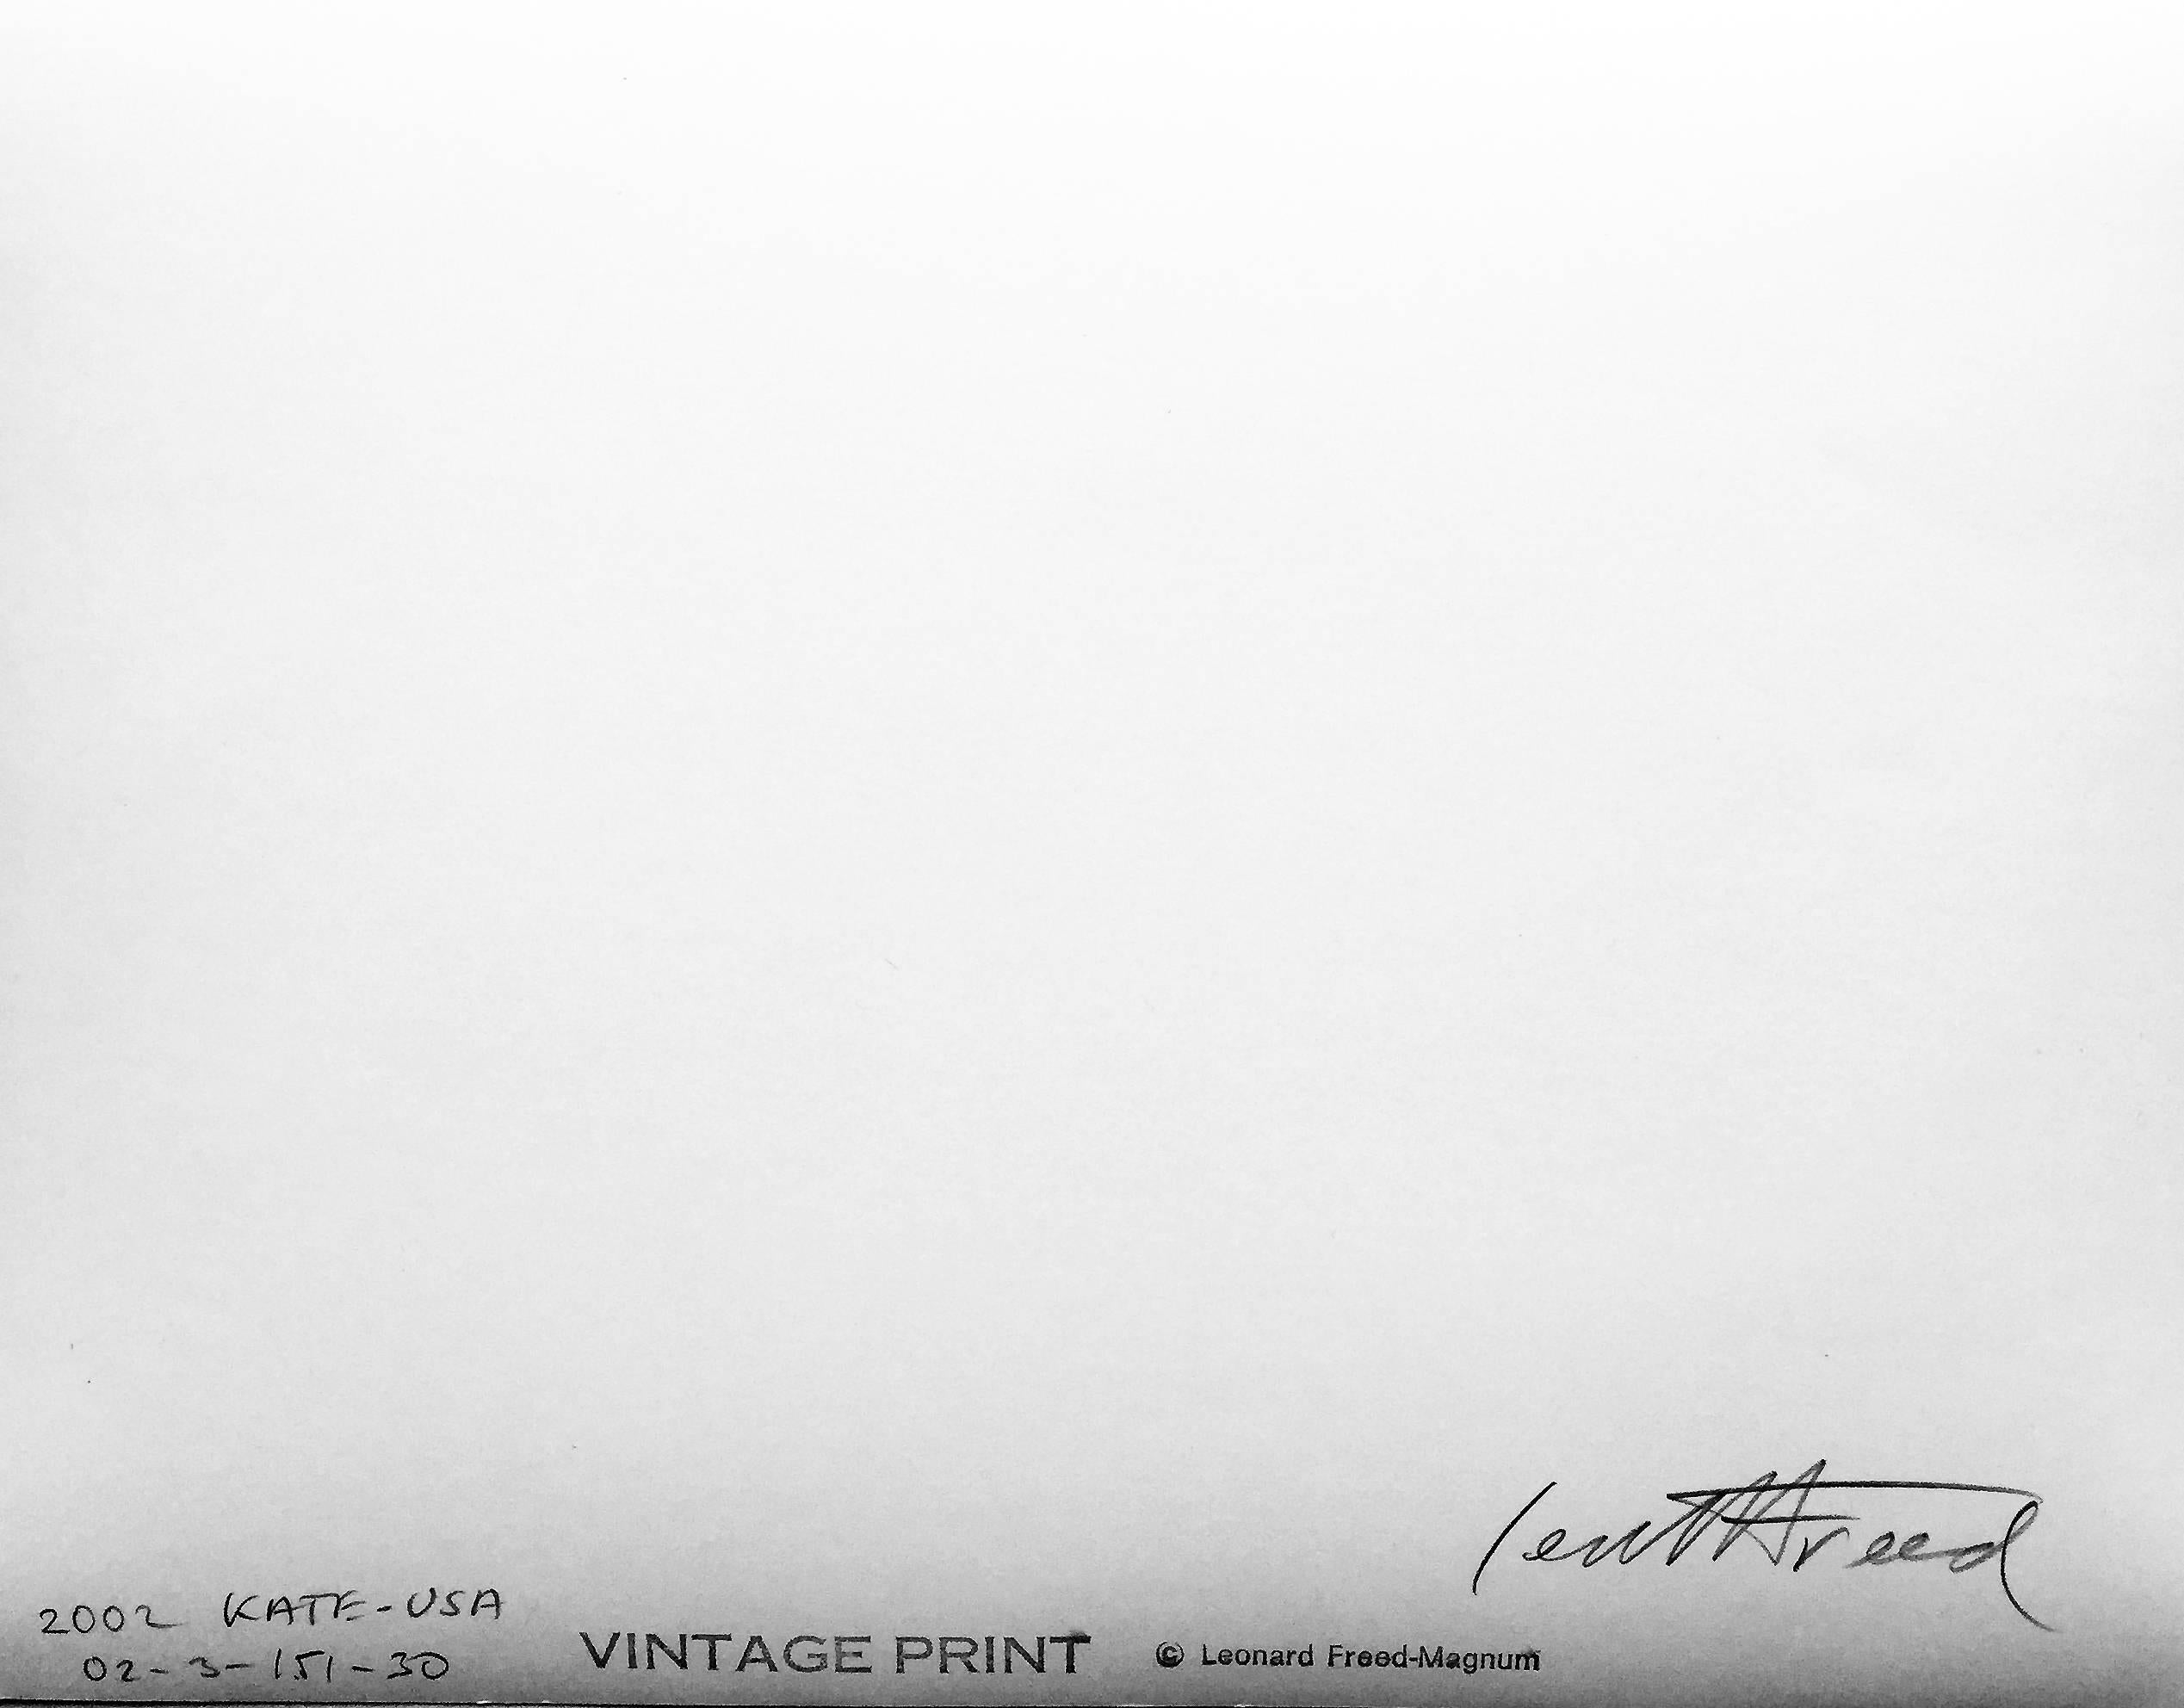 Kate n°4, photographie vintage noire et blanche d'un nu sculptural - Photograph de Leonard Freed